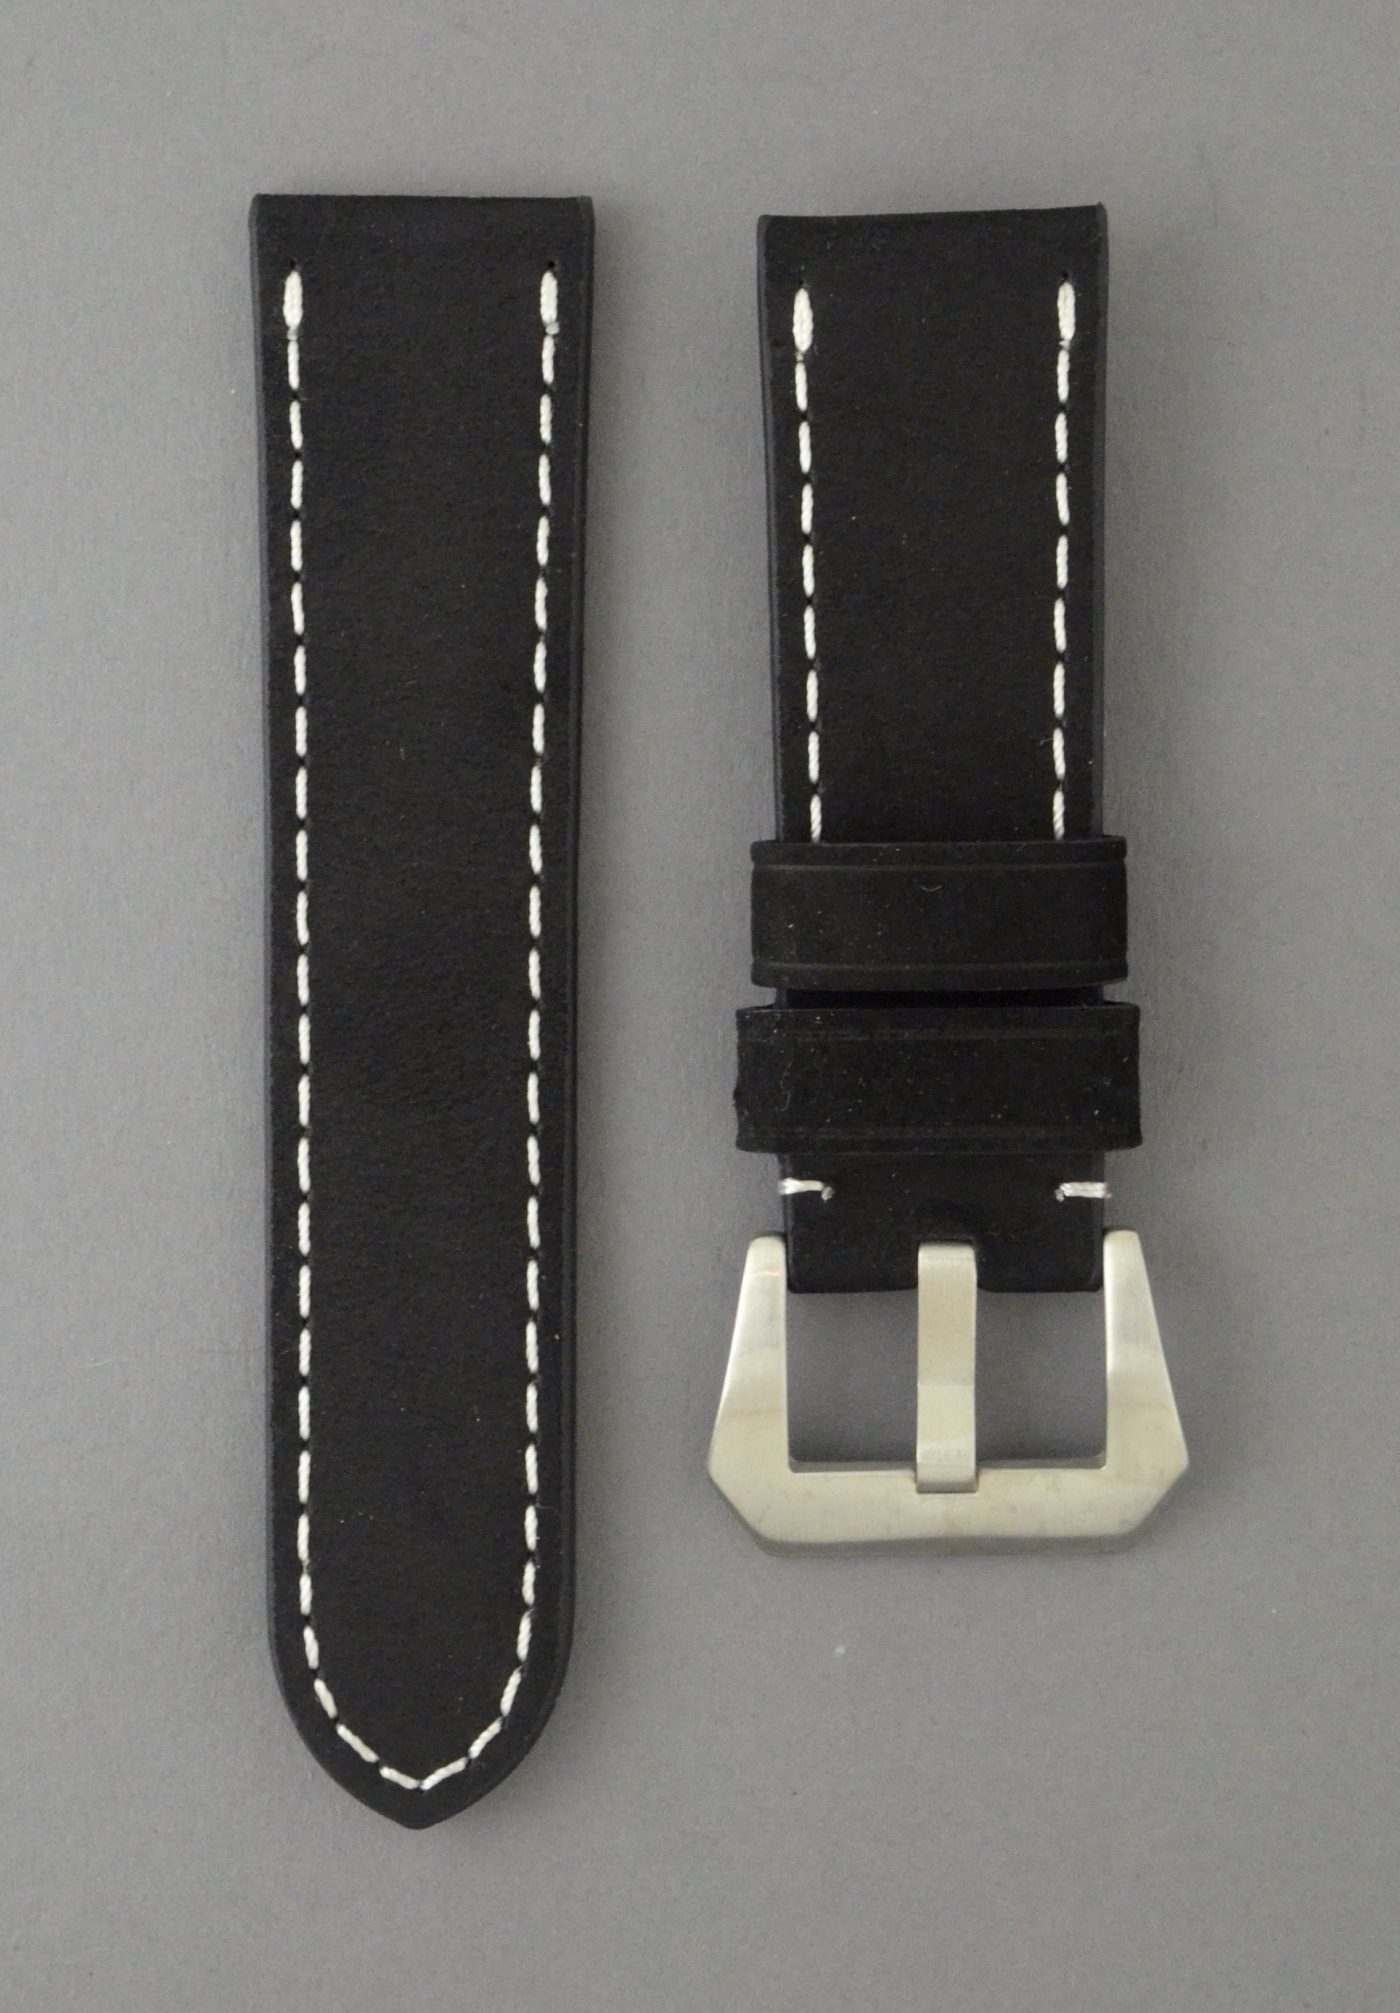 OPBC 麂皮風格牛皮錶帶 - 黑色搭白色縫線（適用 Panerai 沛納海錶款）